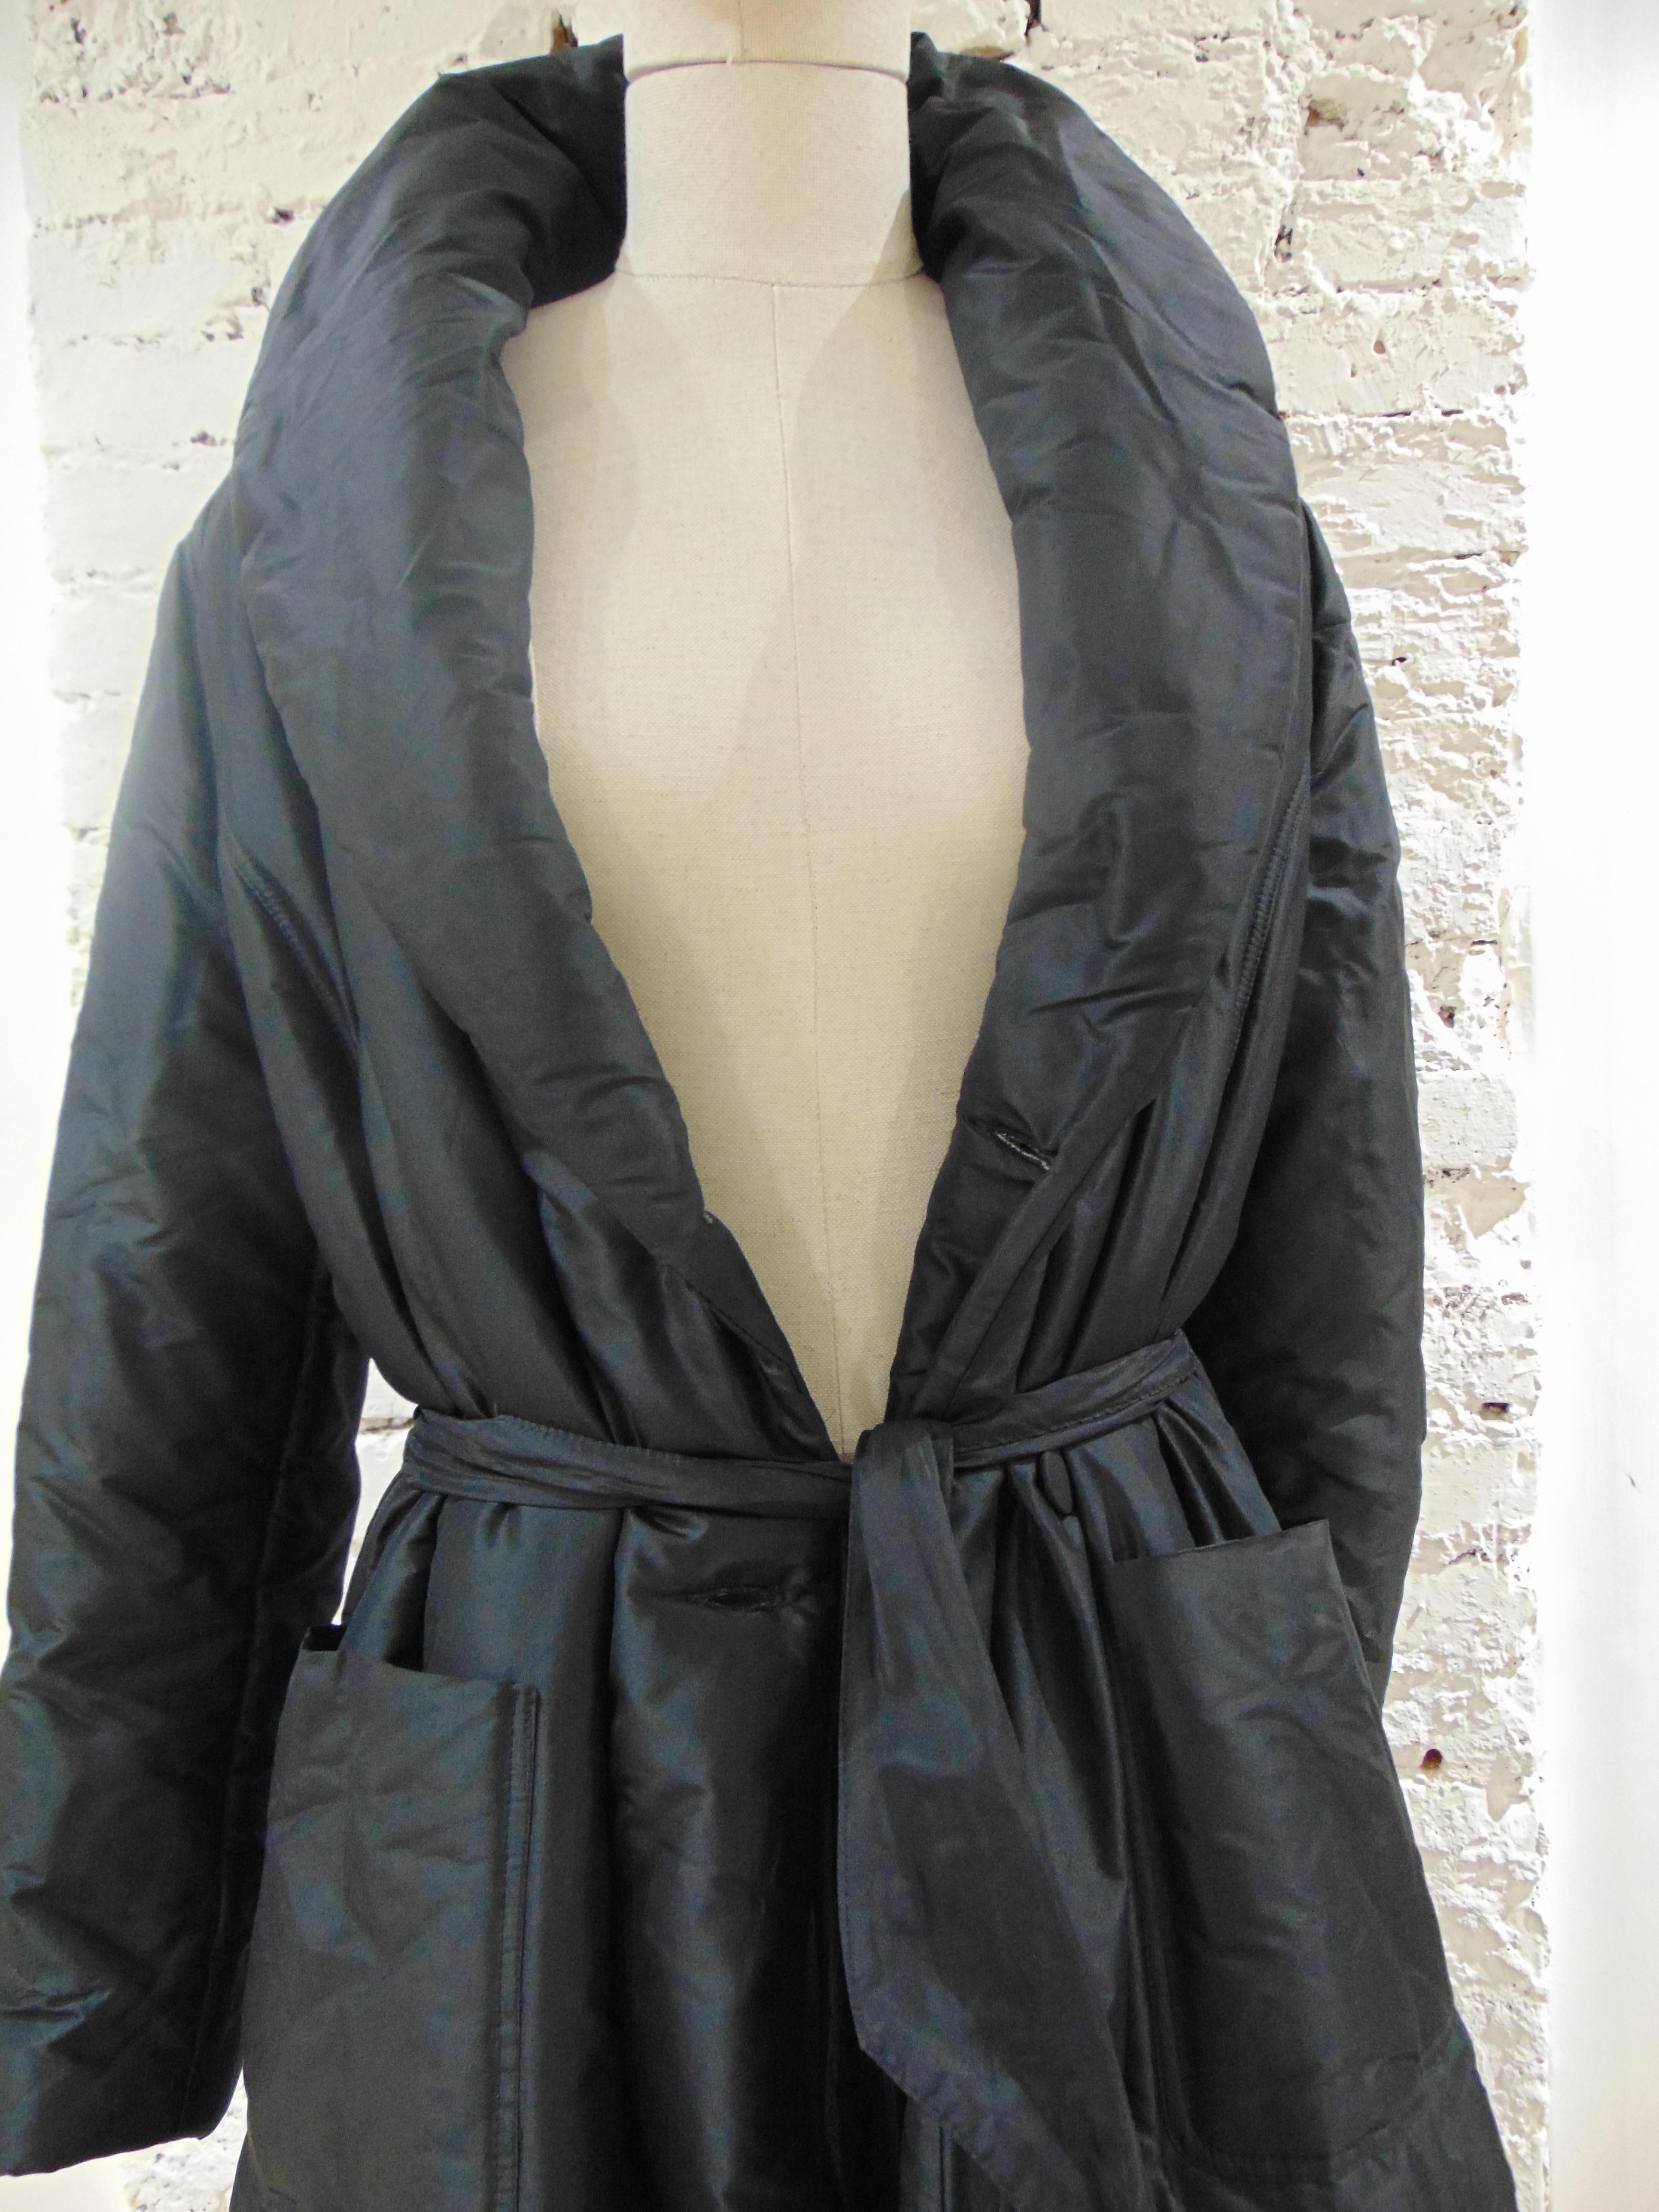 Pinuccia Botondi Schwarzer Mantel 
Schwarzer langer Mantel komplett aus Italien in Größe 46
Zusammensetzung: Acetat